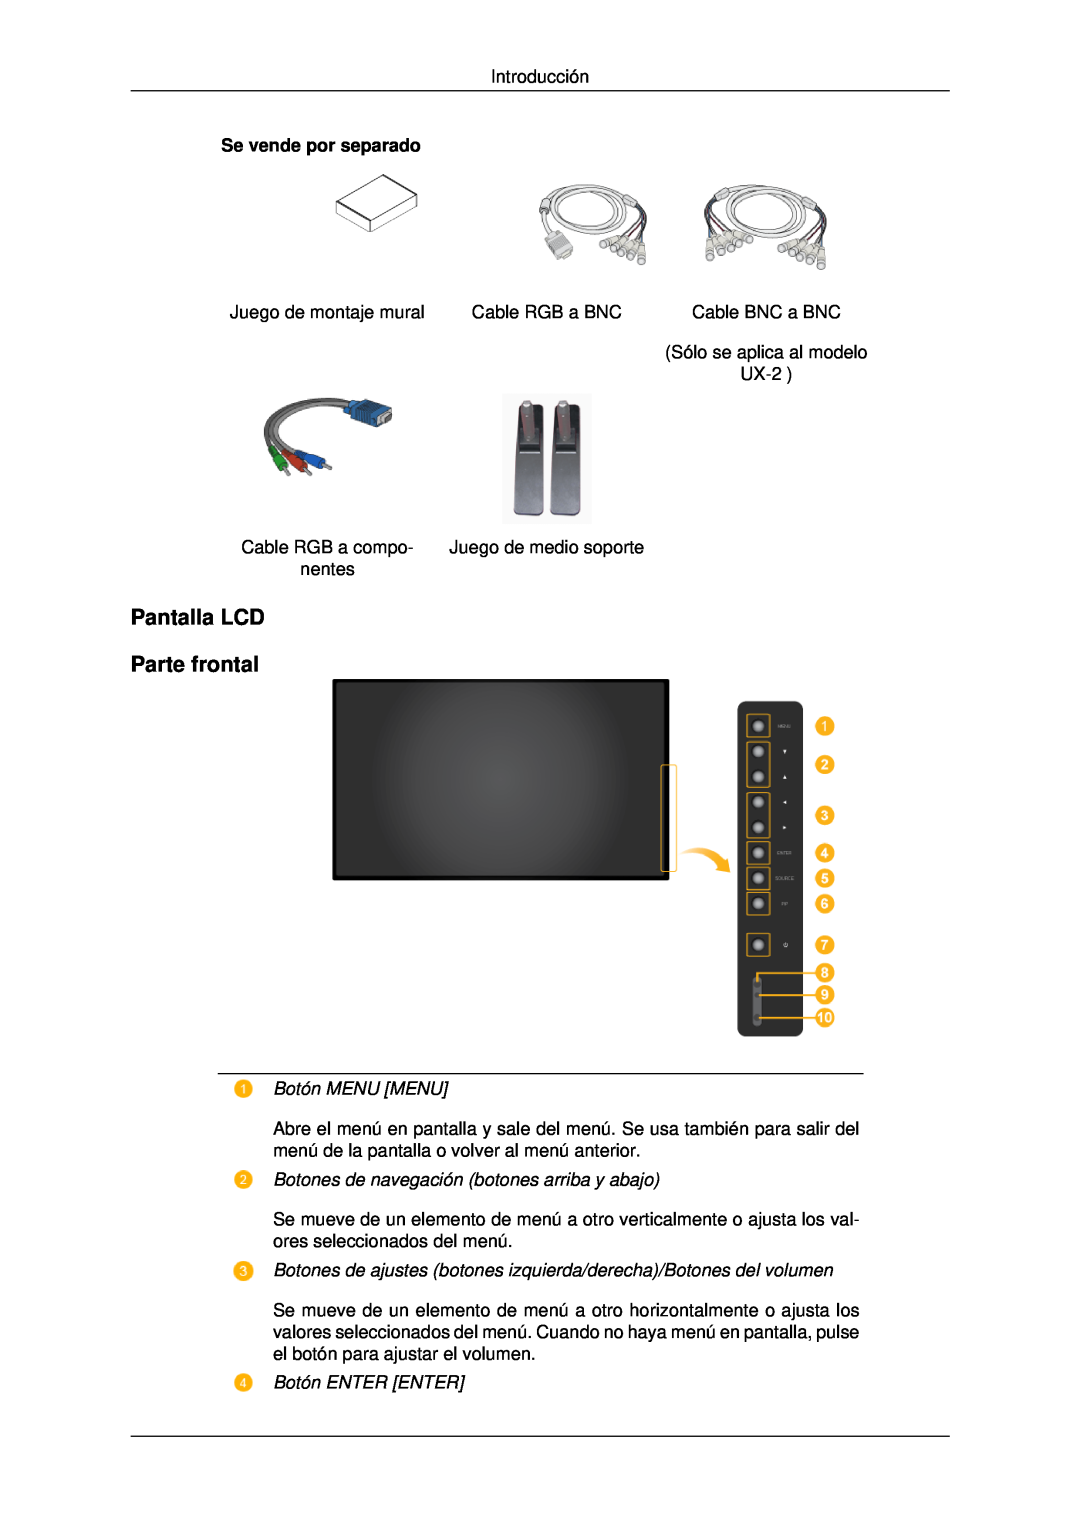 Samsung LH46MSTLBB/EN manual Pantalla LCD Parte frontal, Botón MENU MENU, Botones de navegación botones arriba y abajo 